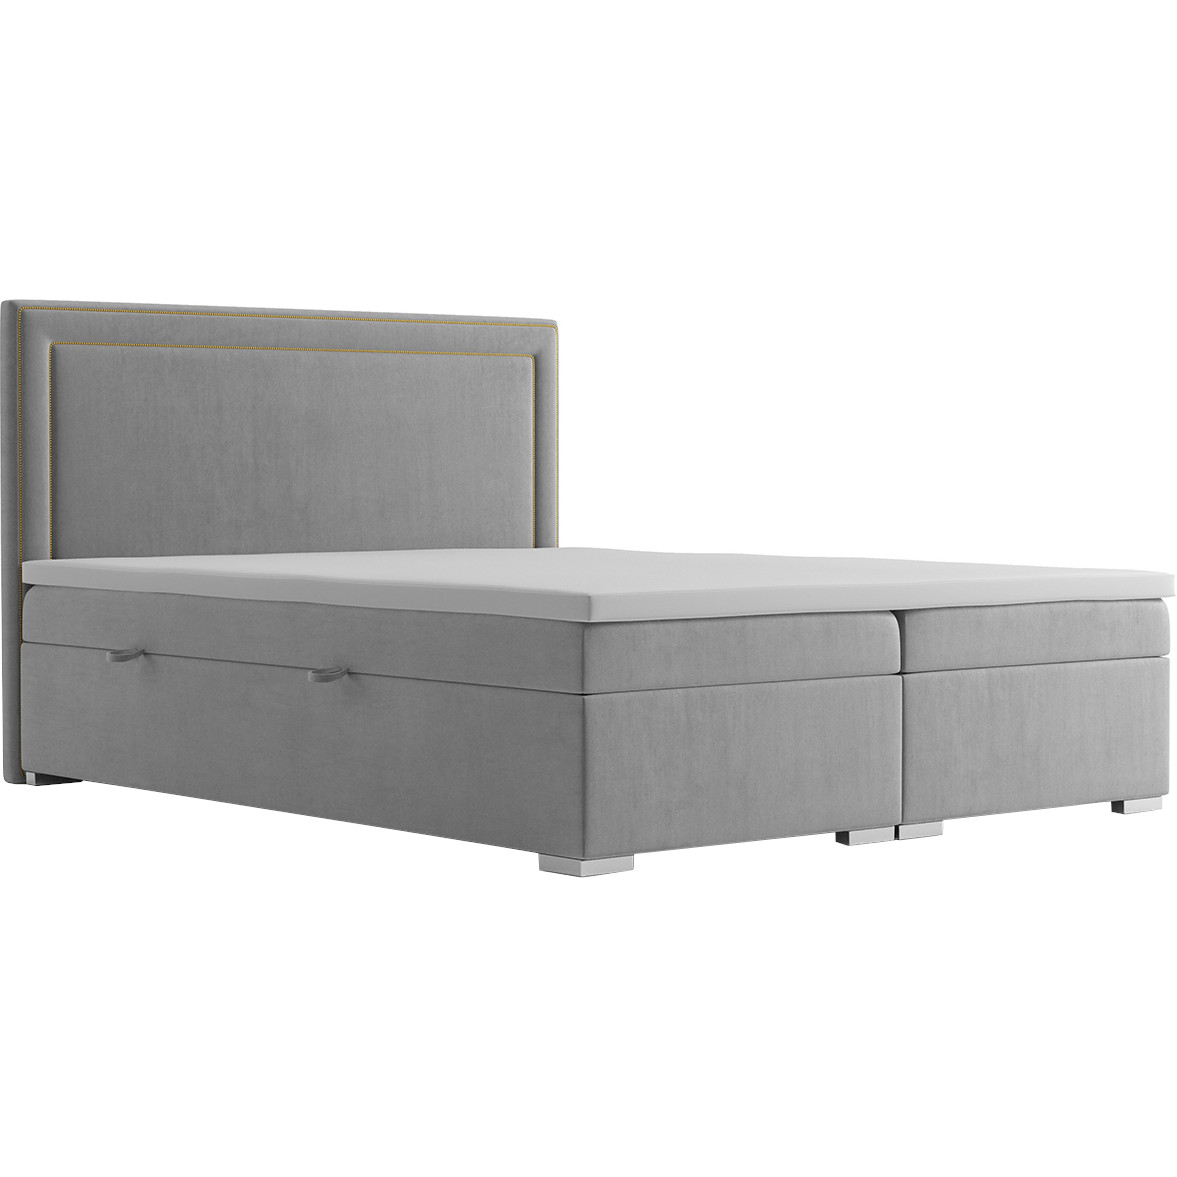 Upholstered bed ANNABEL 140x200 magic velvet 2217